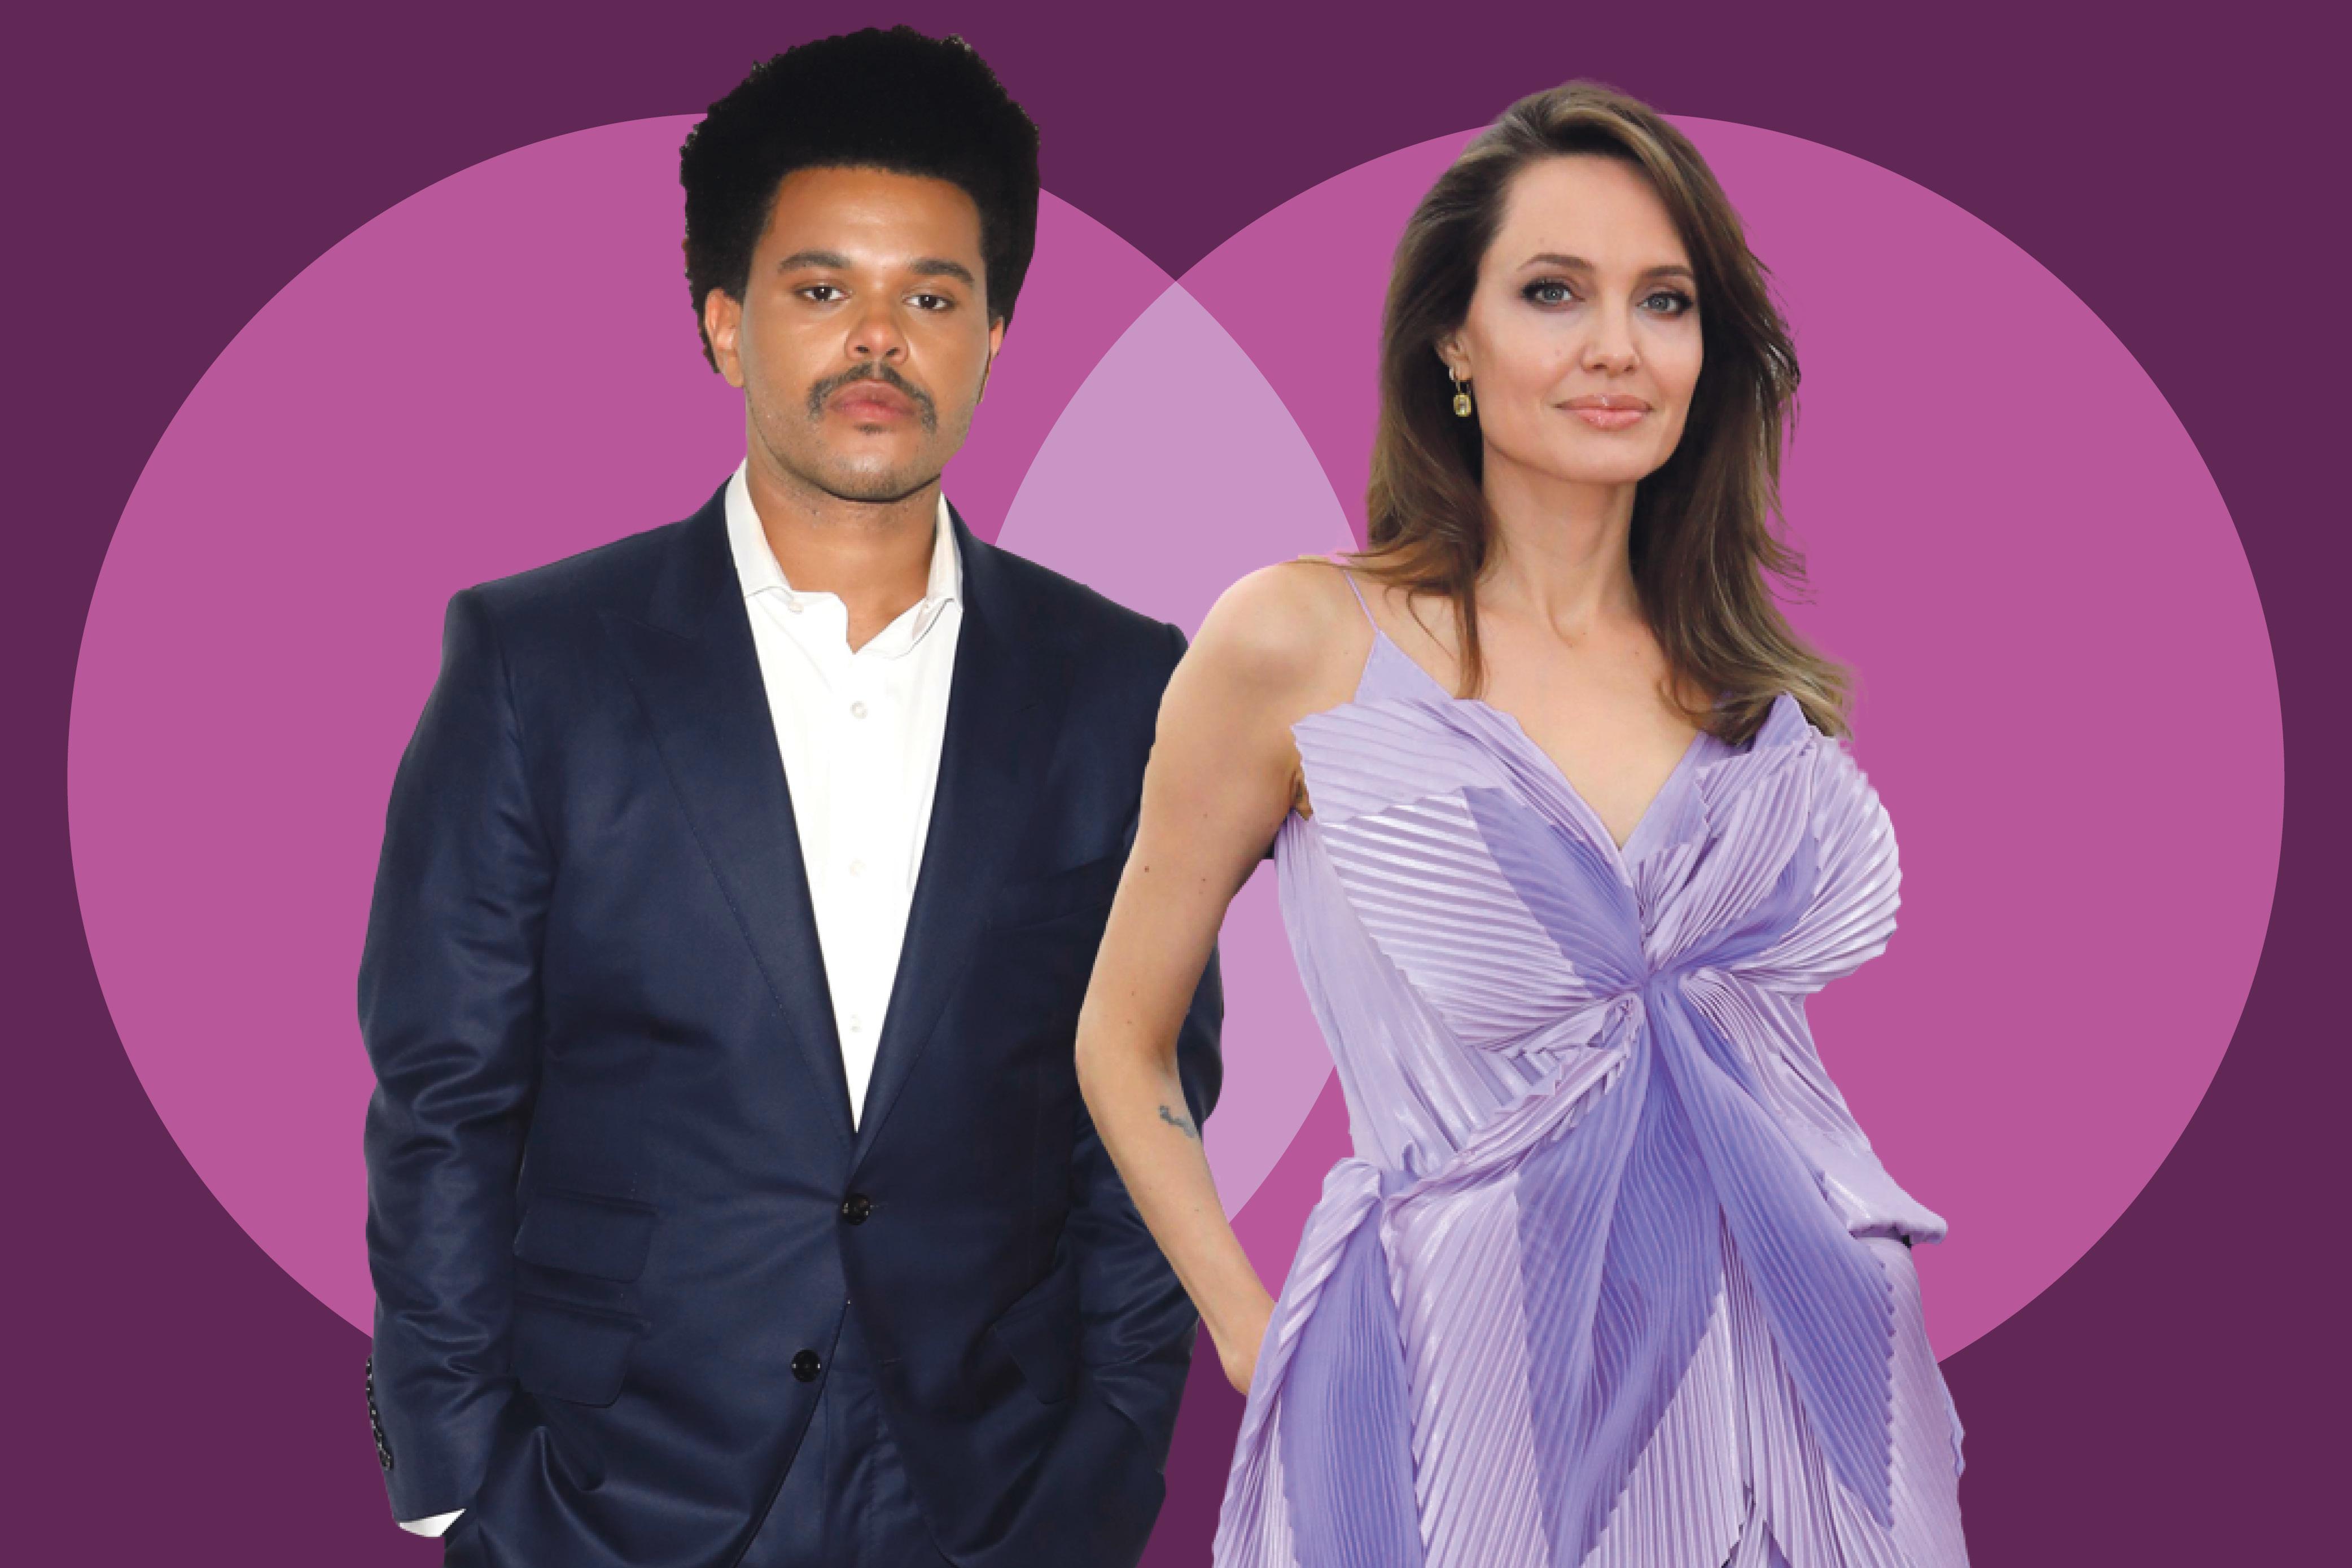 Nueva canción de The Weeknd confirmaría romance con Angelina Jolie